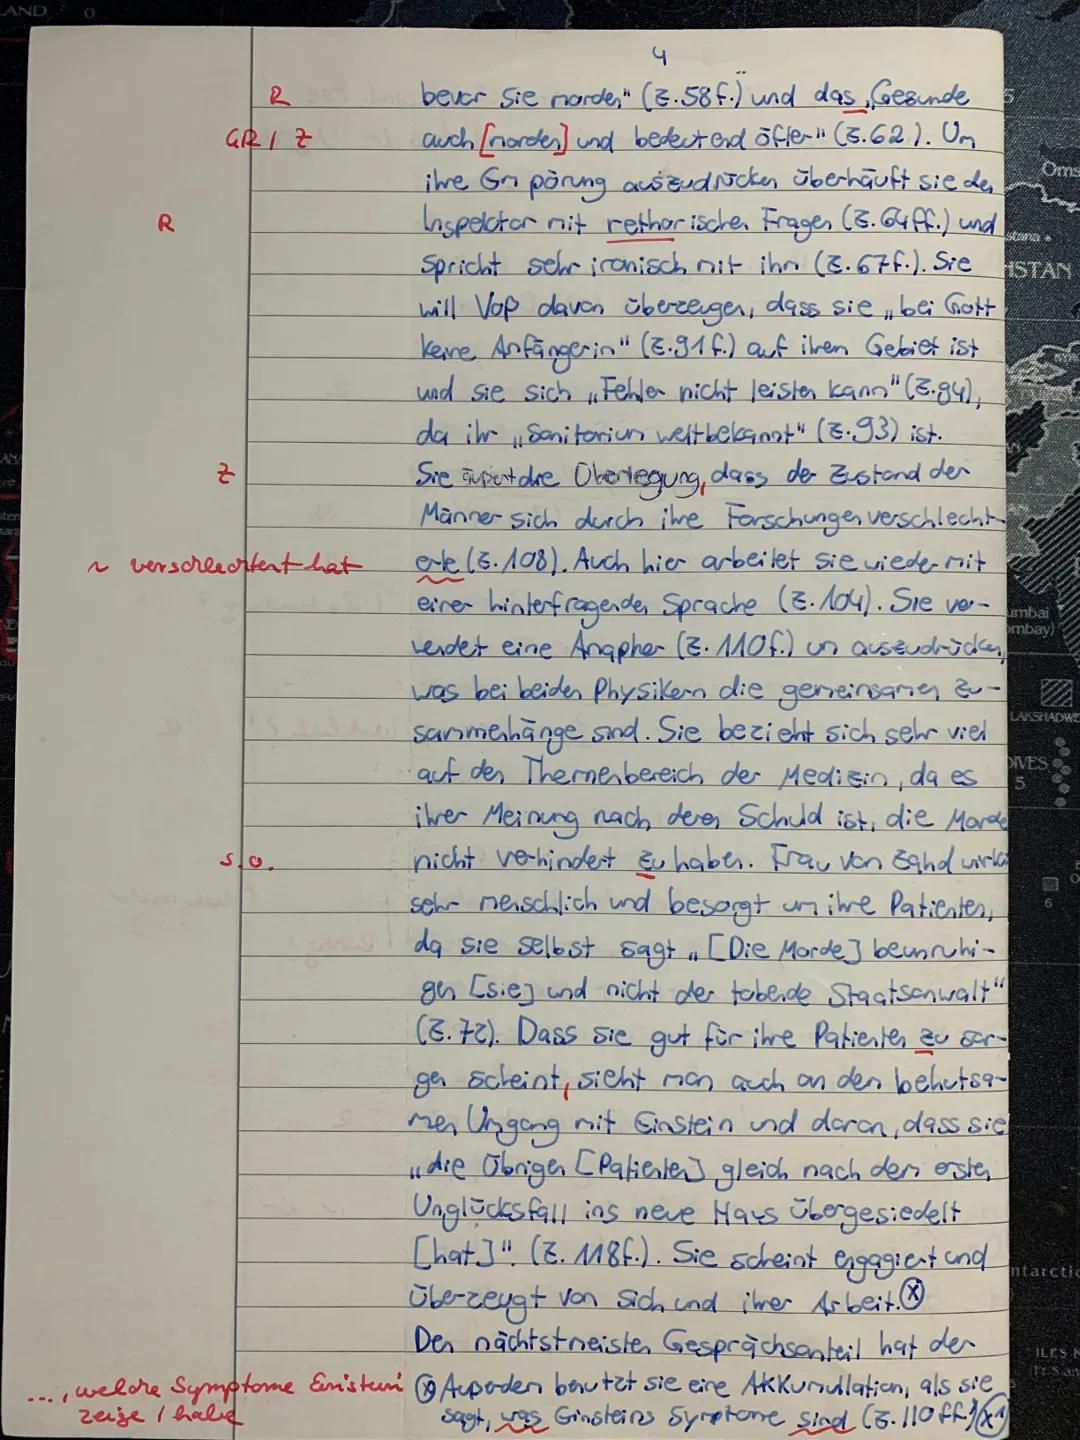 Deutsch LK 11.2 Kursarbeit Nr. 1, F. Dürrenmatt, Die Physiker
Name: Juli
Inhaltsangabe:
Der Text beginnt mit einer Einleitung.
Die Inhaltsan